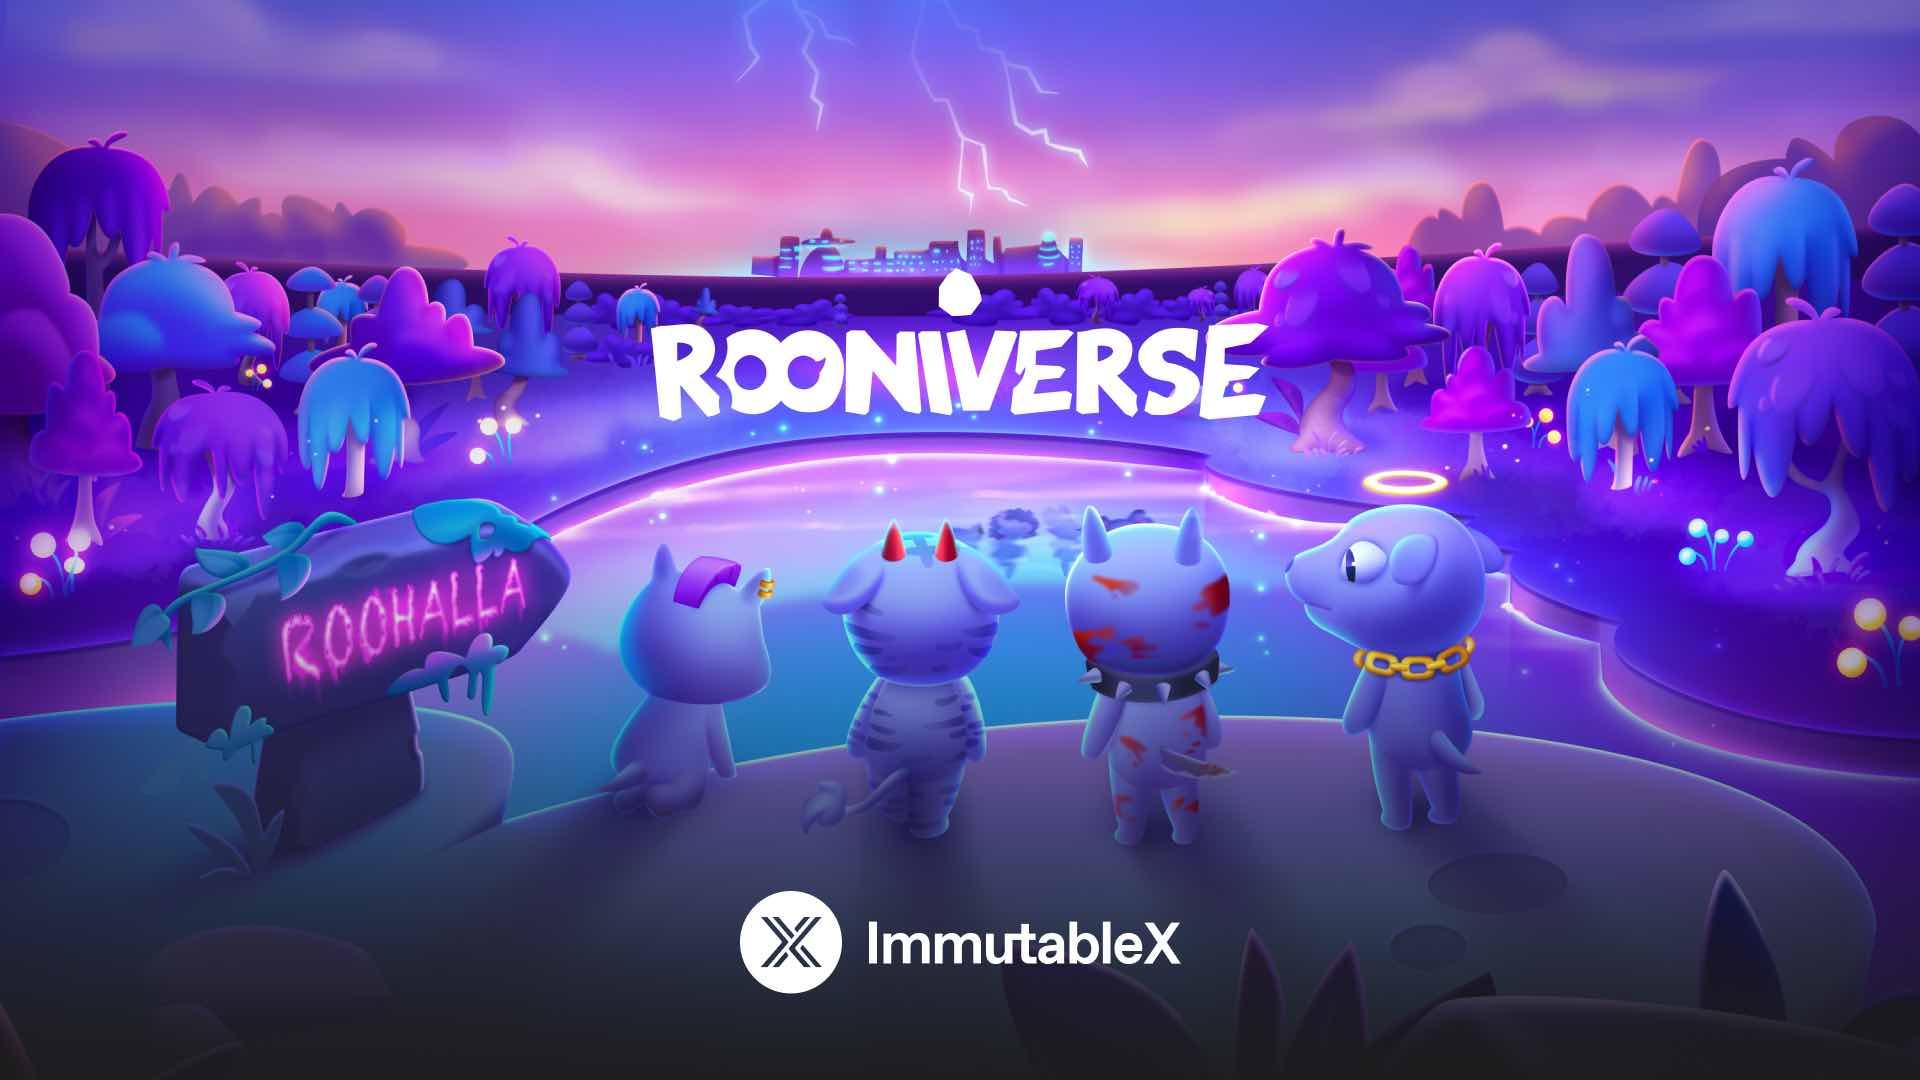 Rooniverse, een mobiele multiplayergame, presenteert een betoverende metaverse waarmee spelers kunnen deelnemen aan speel-om-verdien-avonturen met tribale strijders